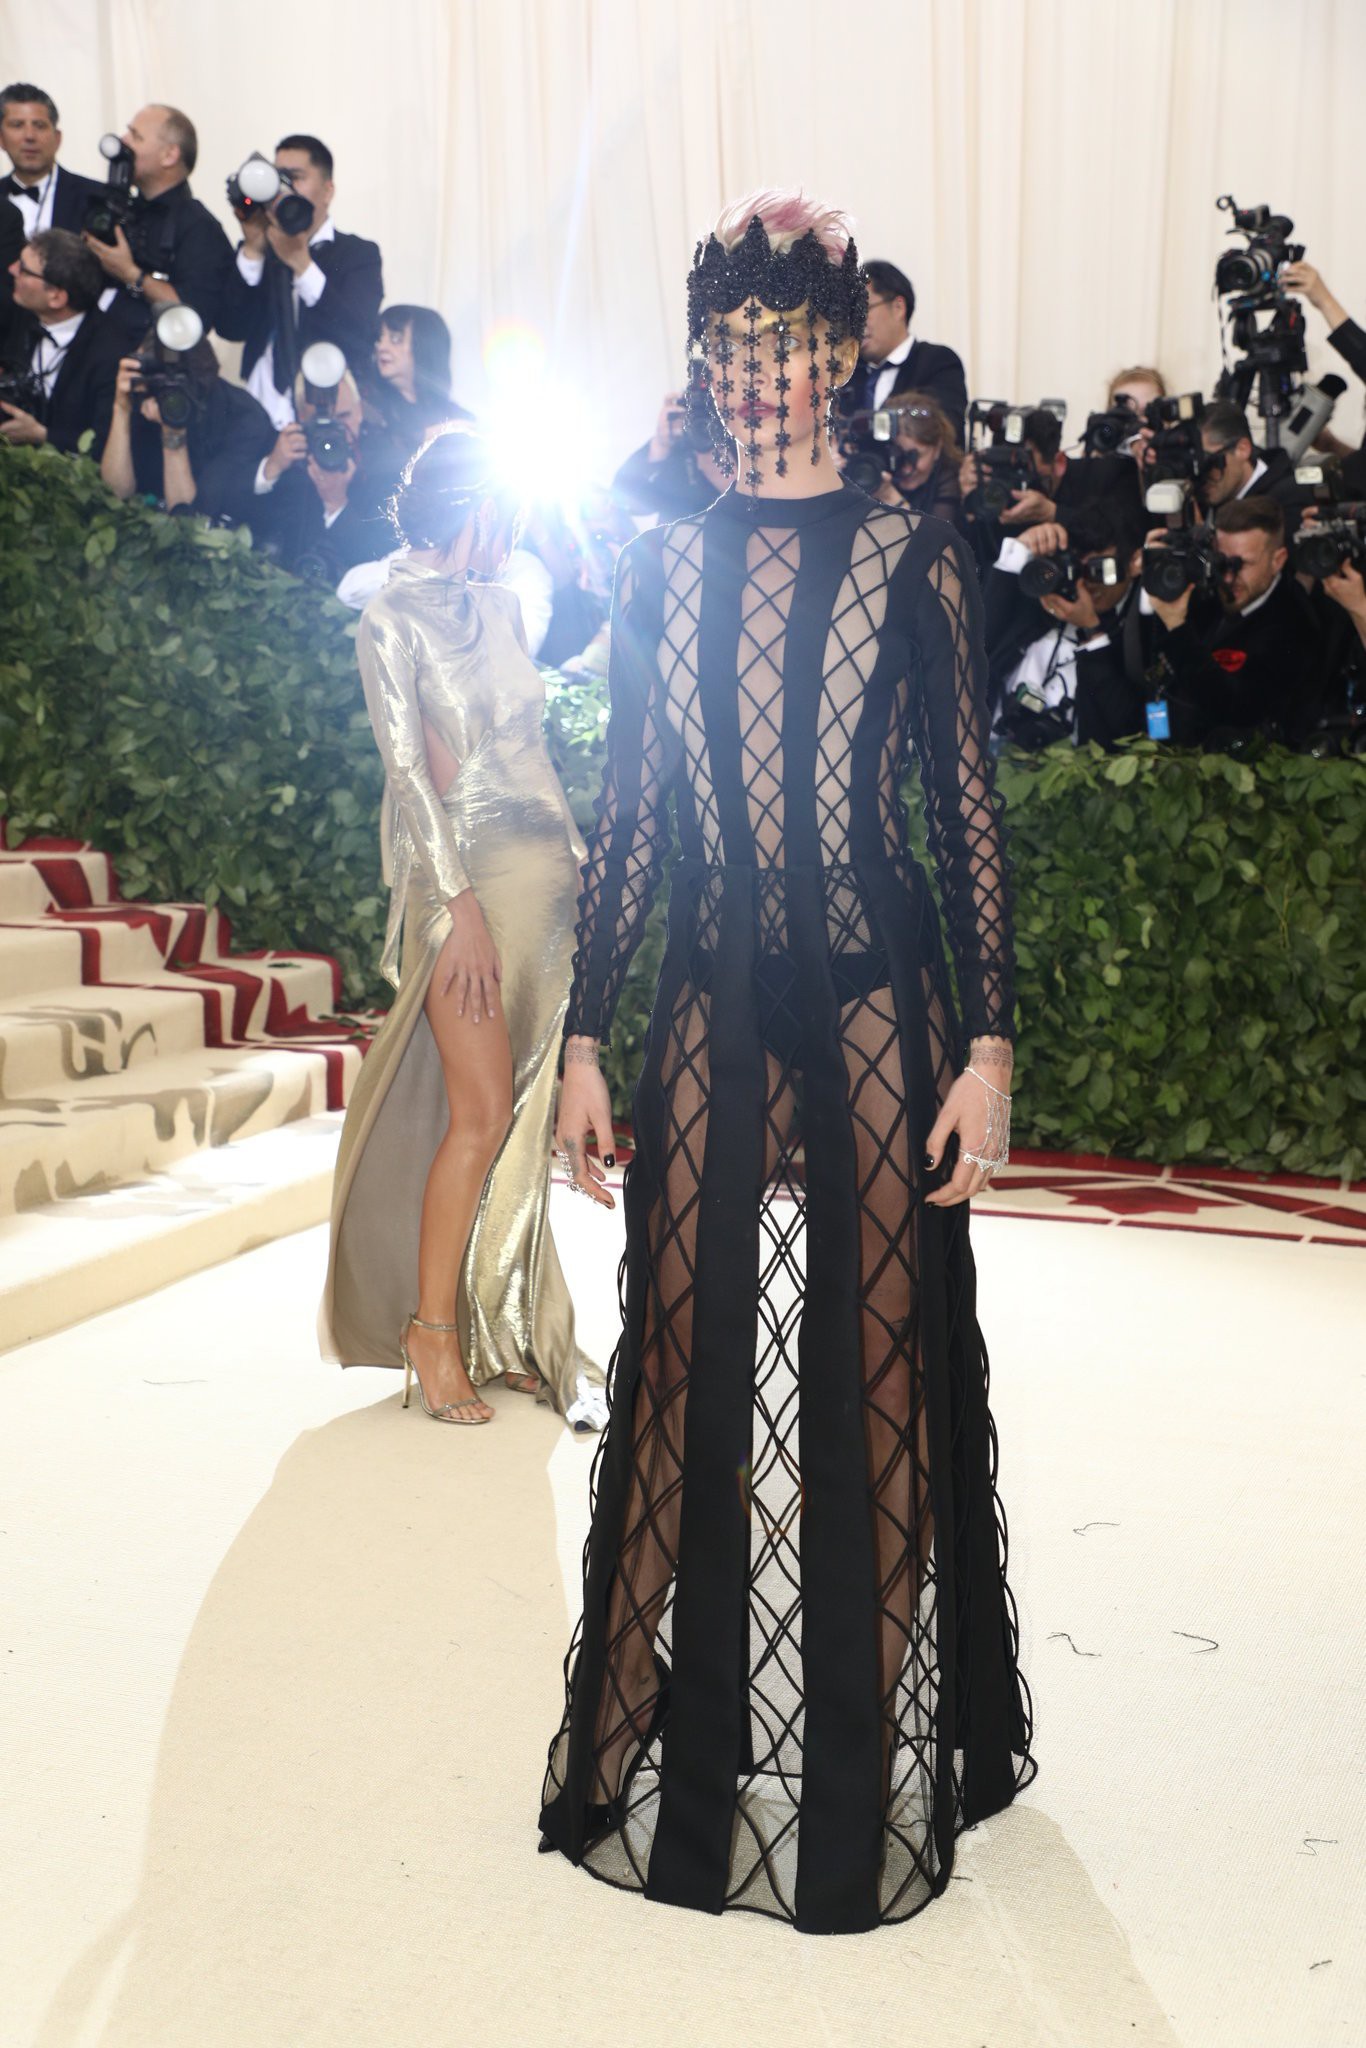  Siêu mẫu Cara Delevingne gây ấn tượng với trang phục xuyên thấu táo bạo “lộ” cả nội y của Dior. Với chủ đề liên quan đến tôn giáo, việc quá phô bày cơ thể khiến siêu mẫu trở thành tâm điểm của nhiều lời bàn tán. 